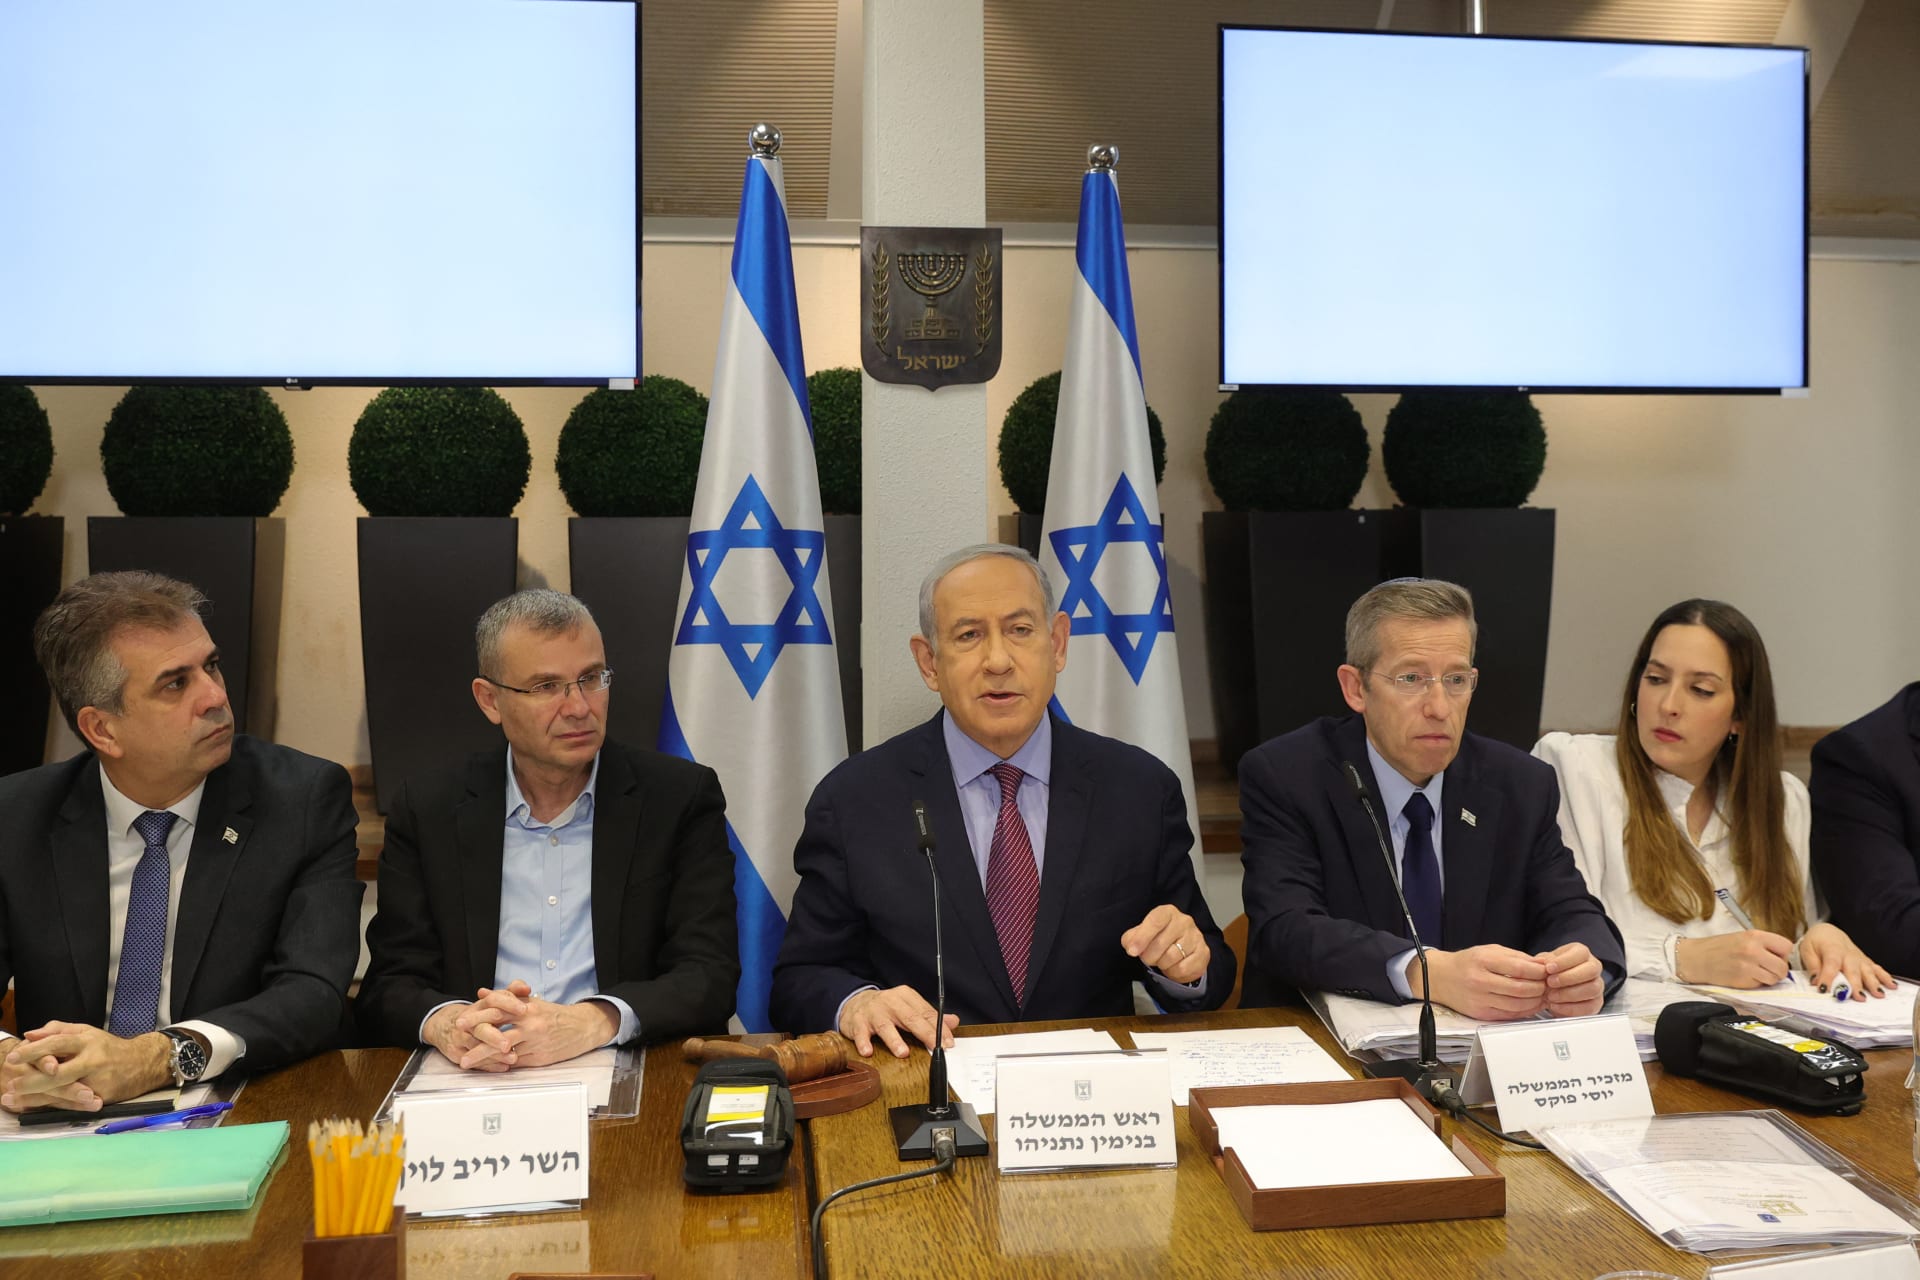 نتنياهو يرد على ادعاء جنوب إفريقيا بارتكاب إسرائيل "إبادة جماعية في غزة"